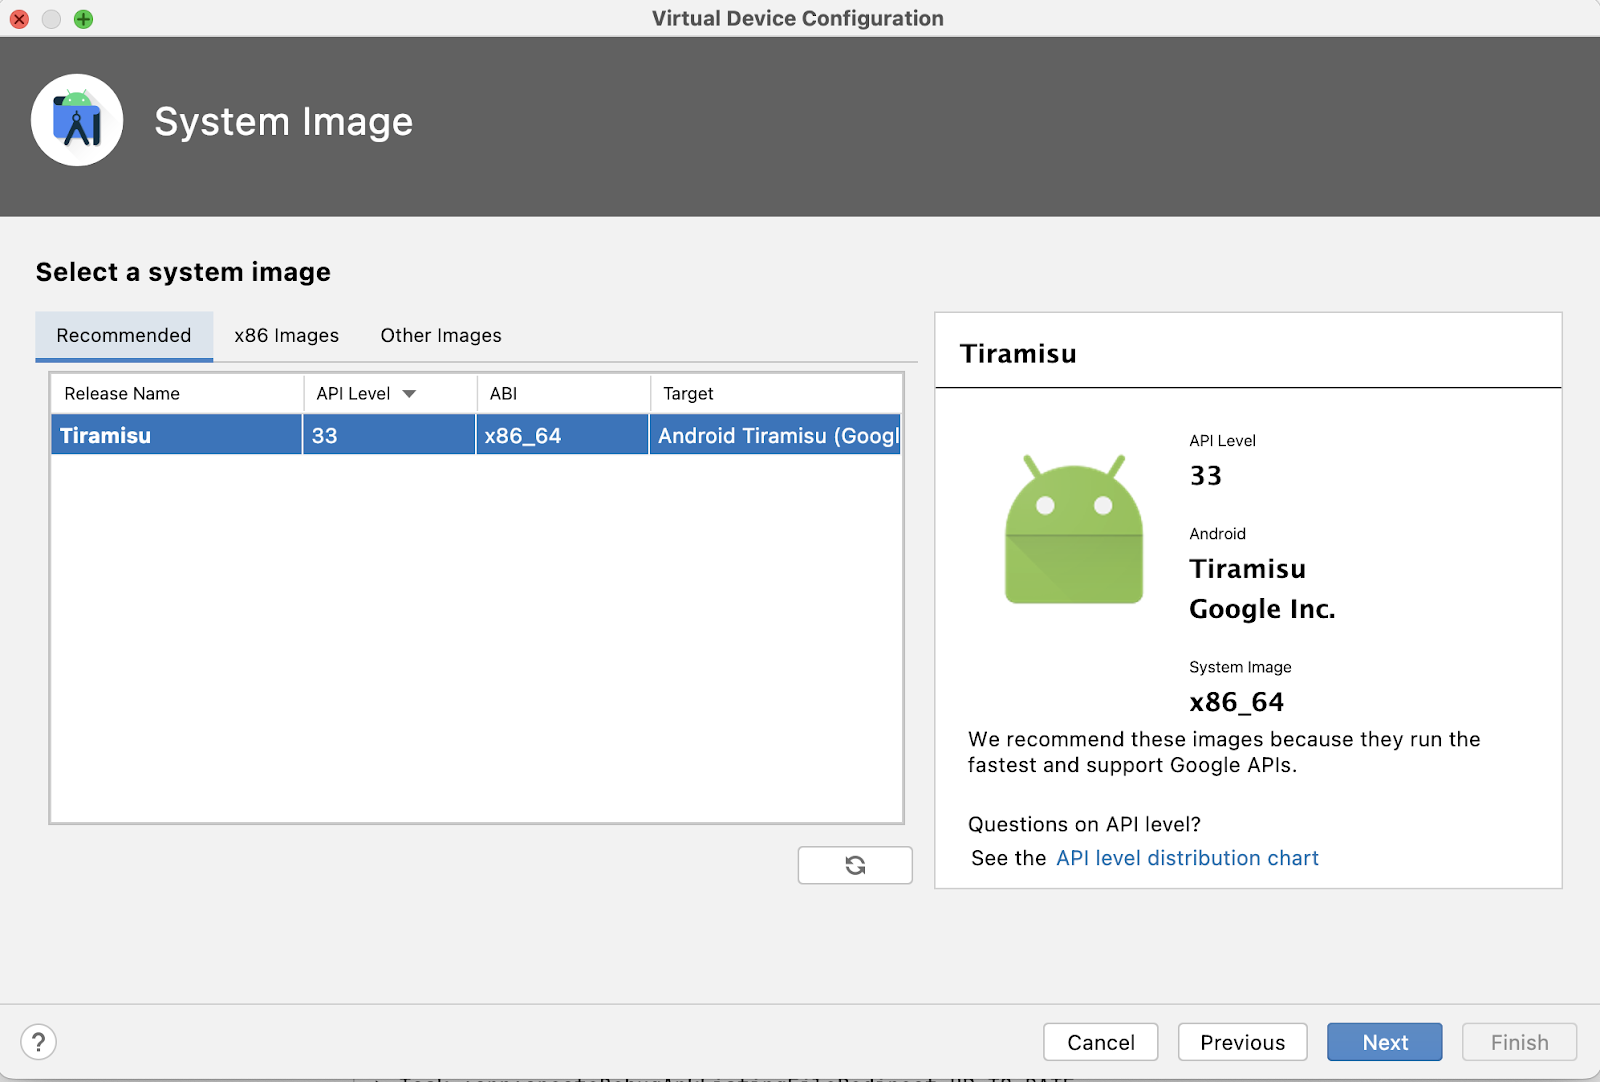 Cửa sổ Virtual Device Configuration (Cấu hình thiết bị ảo) sẽ hiển thị lời nhắc chọn một hình ảnh hệ thống. API Tiramisu được chọn.